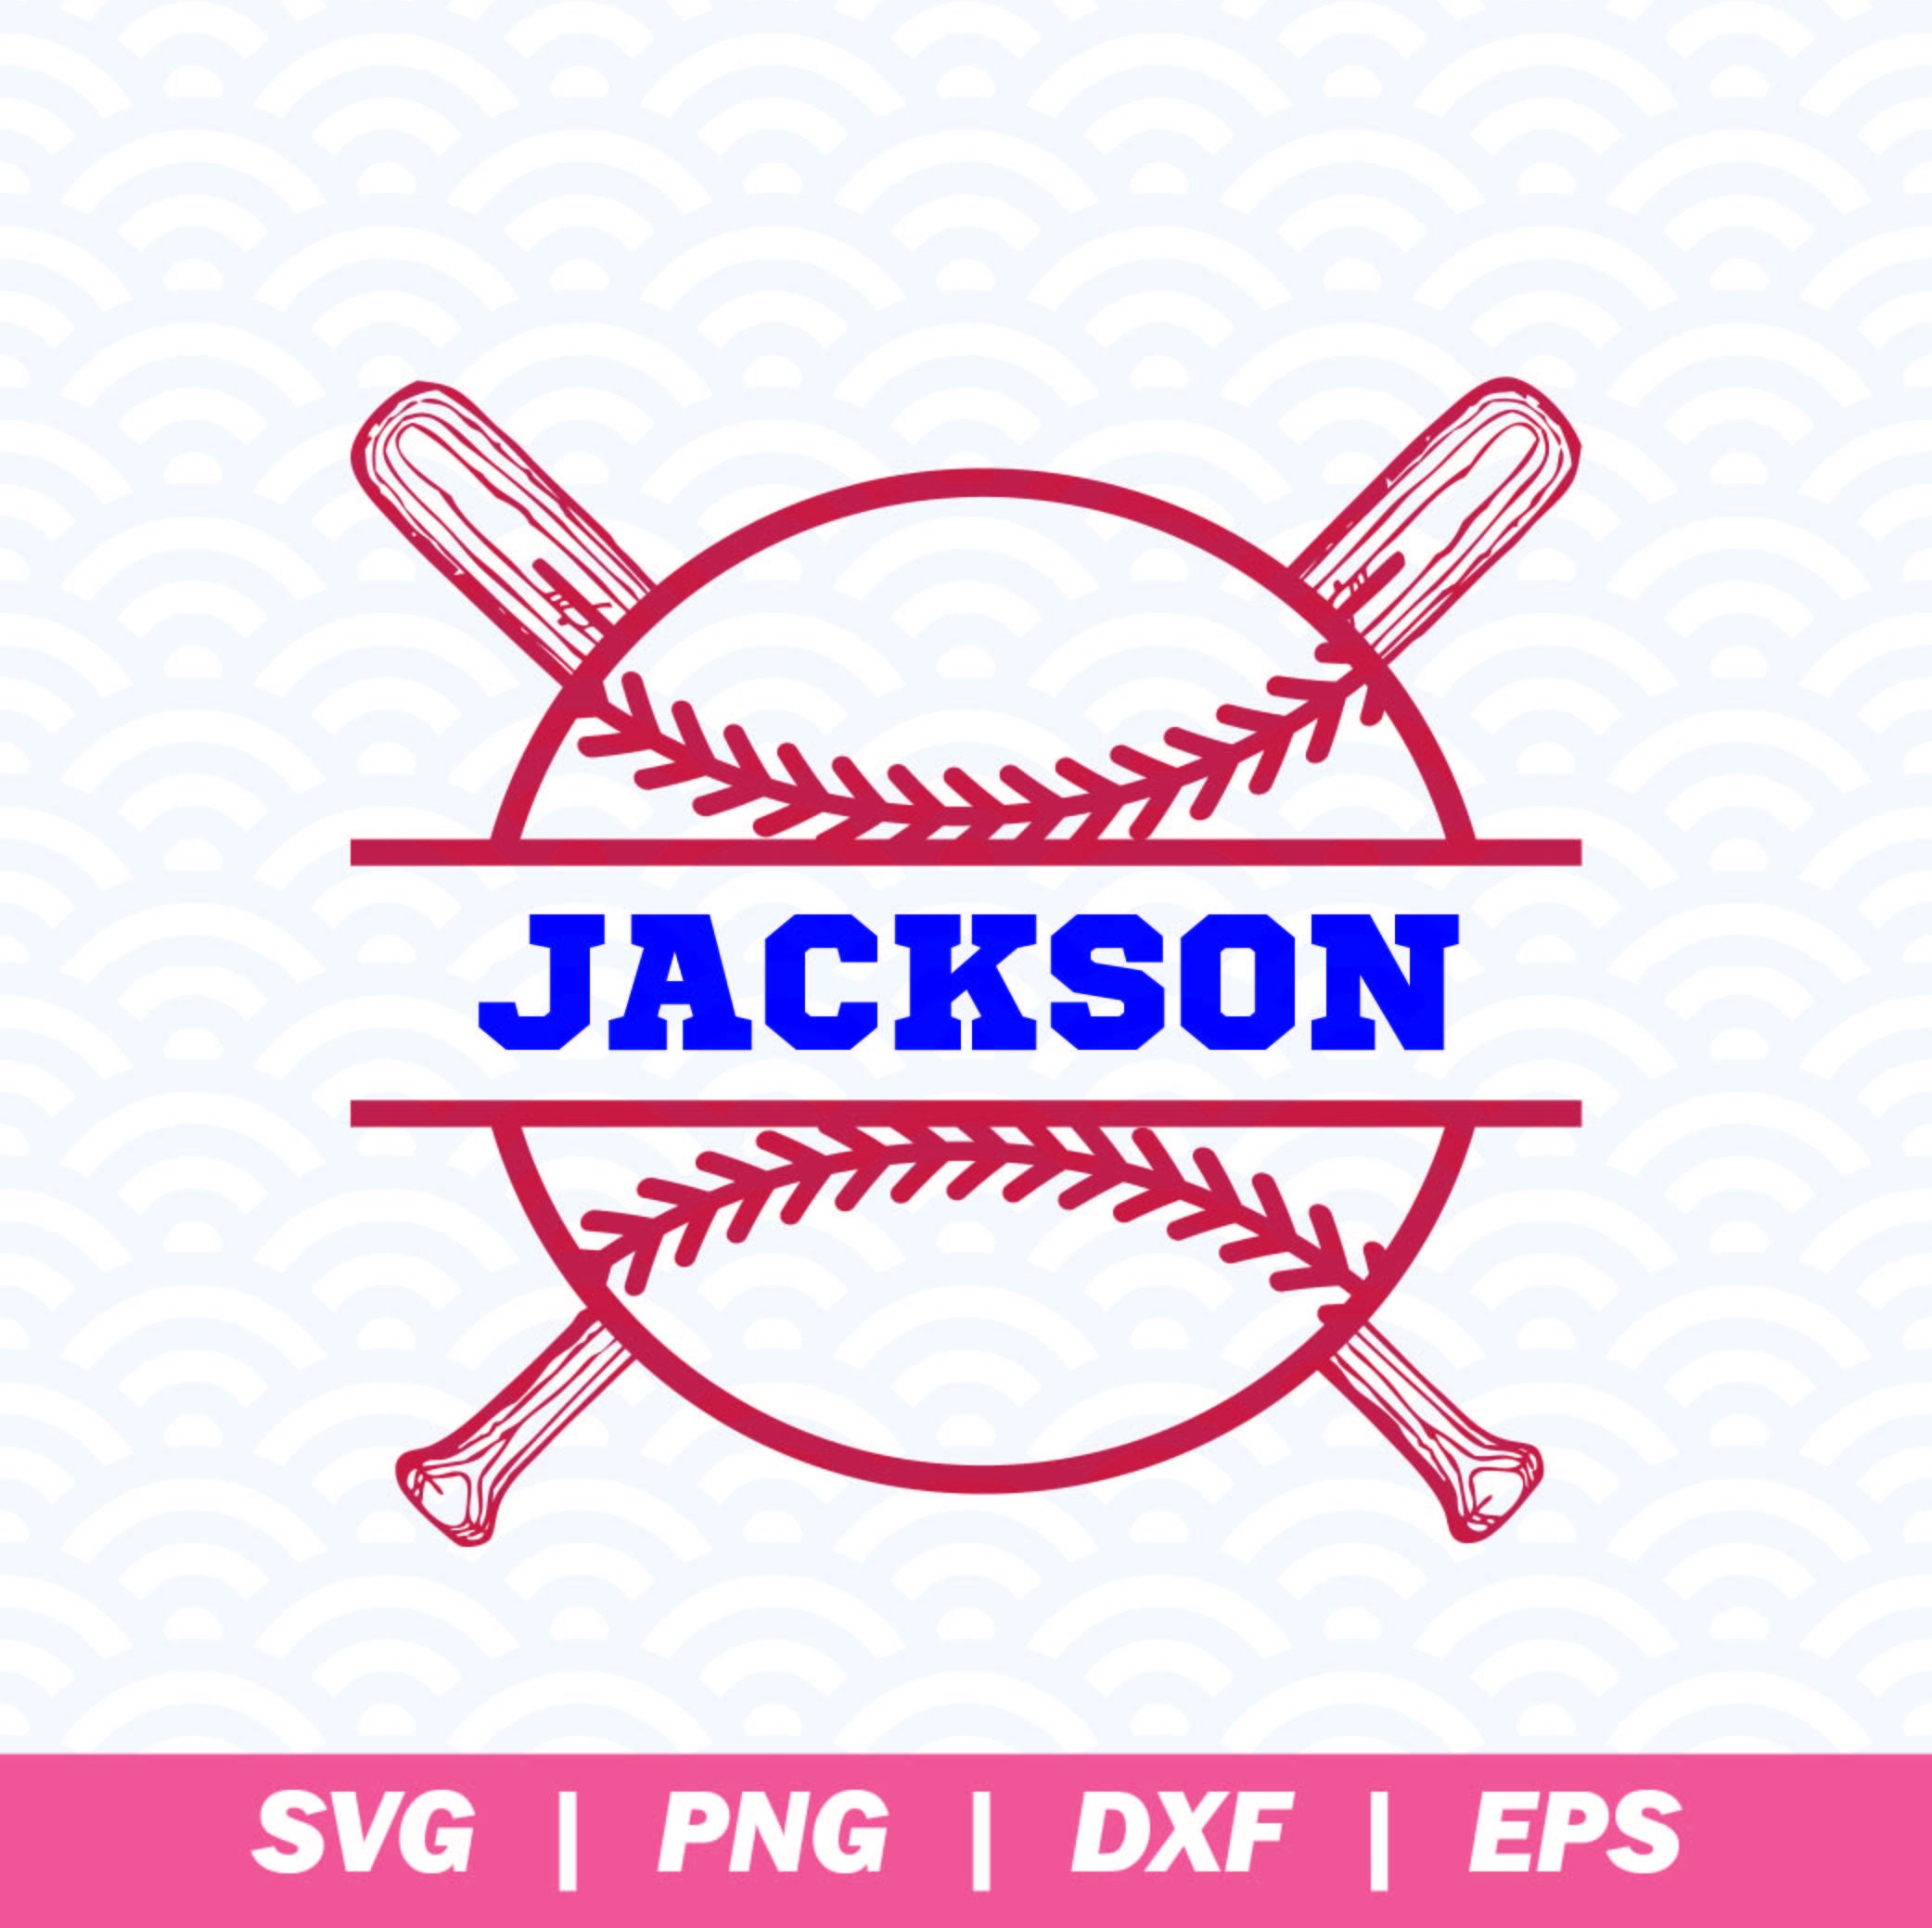 SVG of baseball monogram